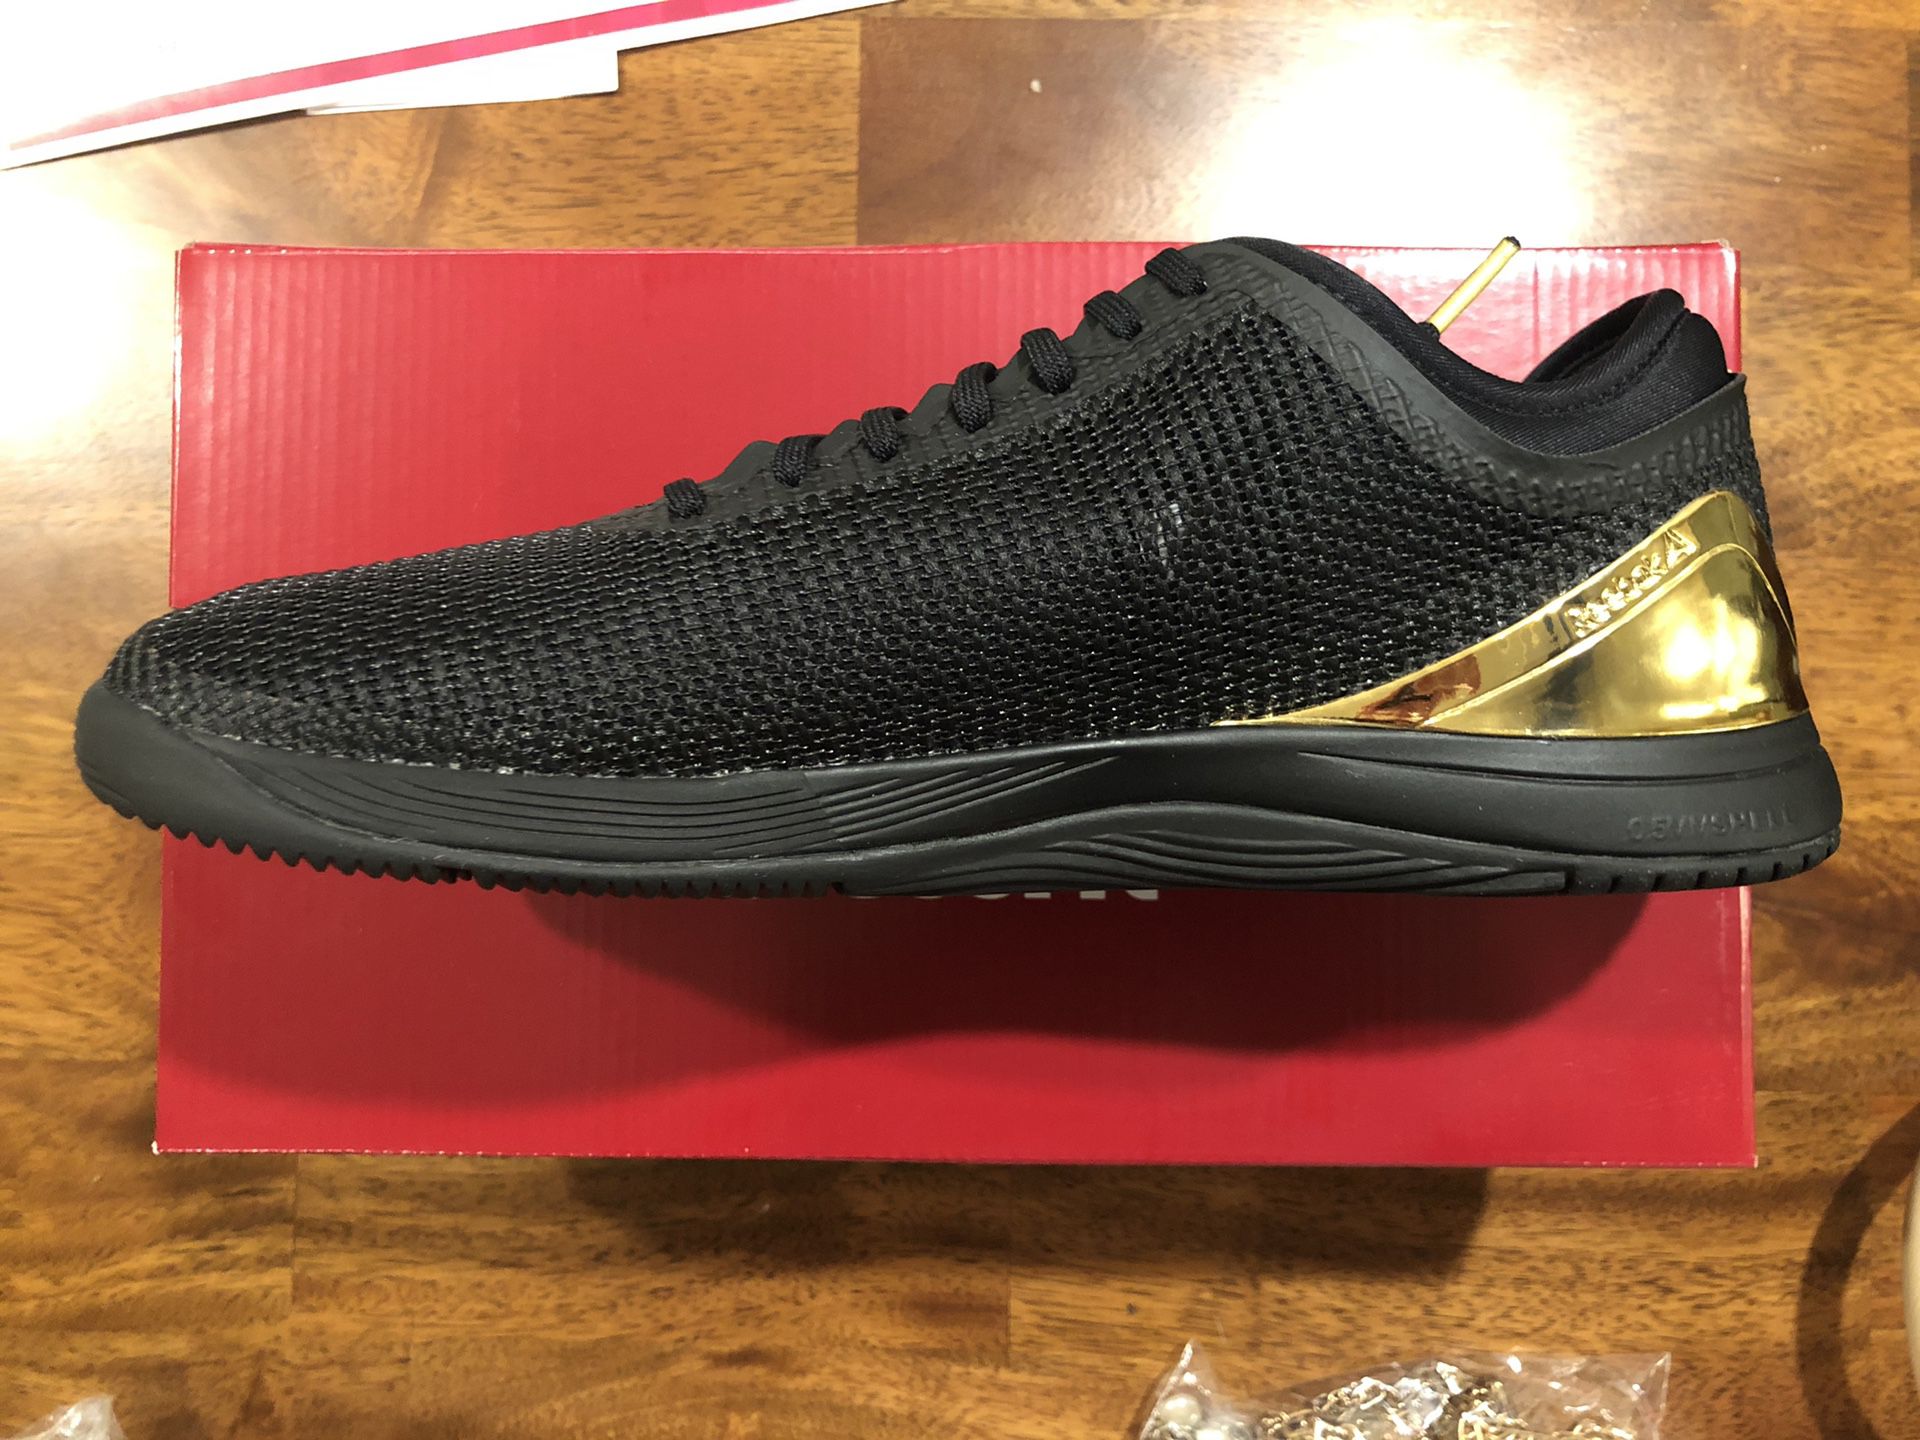 Reebok Men's Nano 8 Flexweave Shoes Size 10.5 Black/True Gold for Sale in Phoenix, AZ - OfferUp